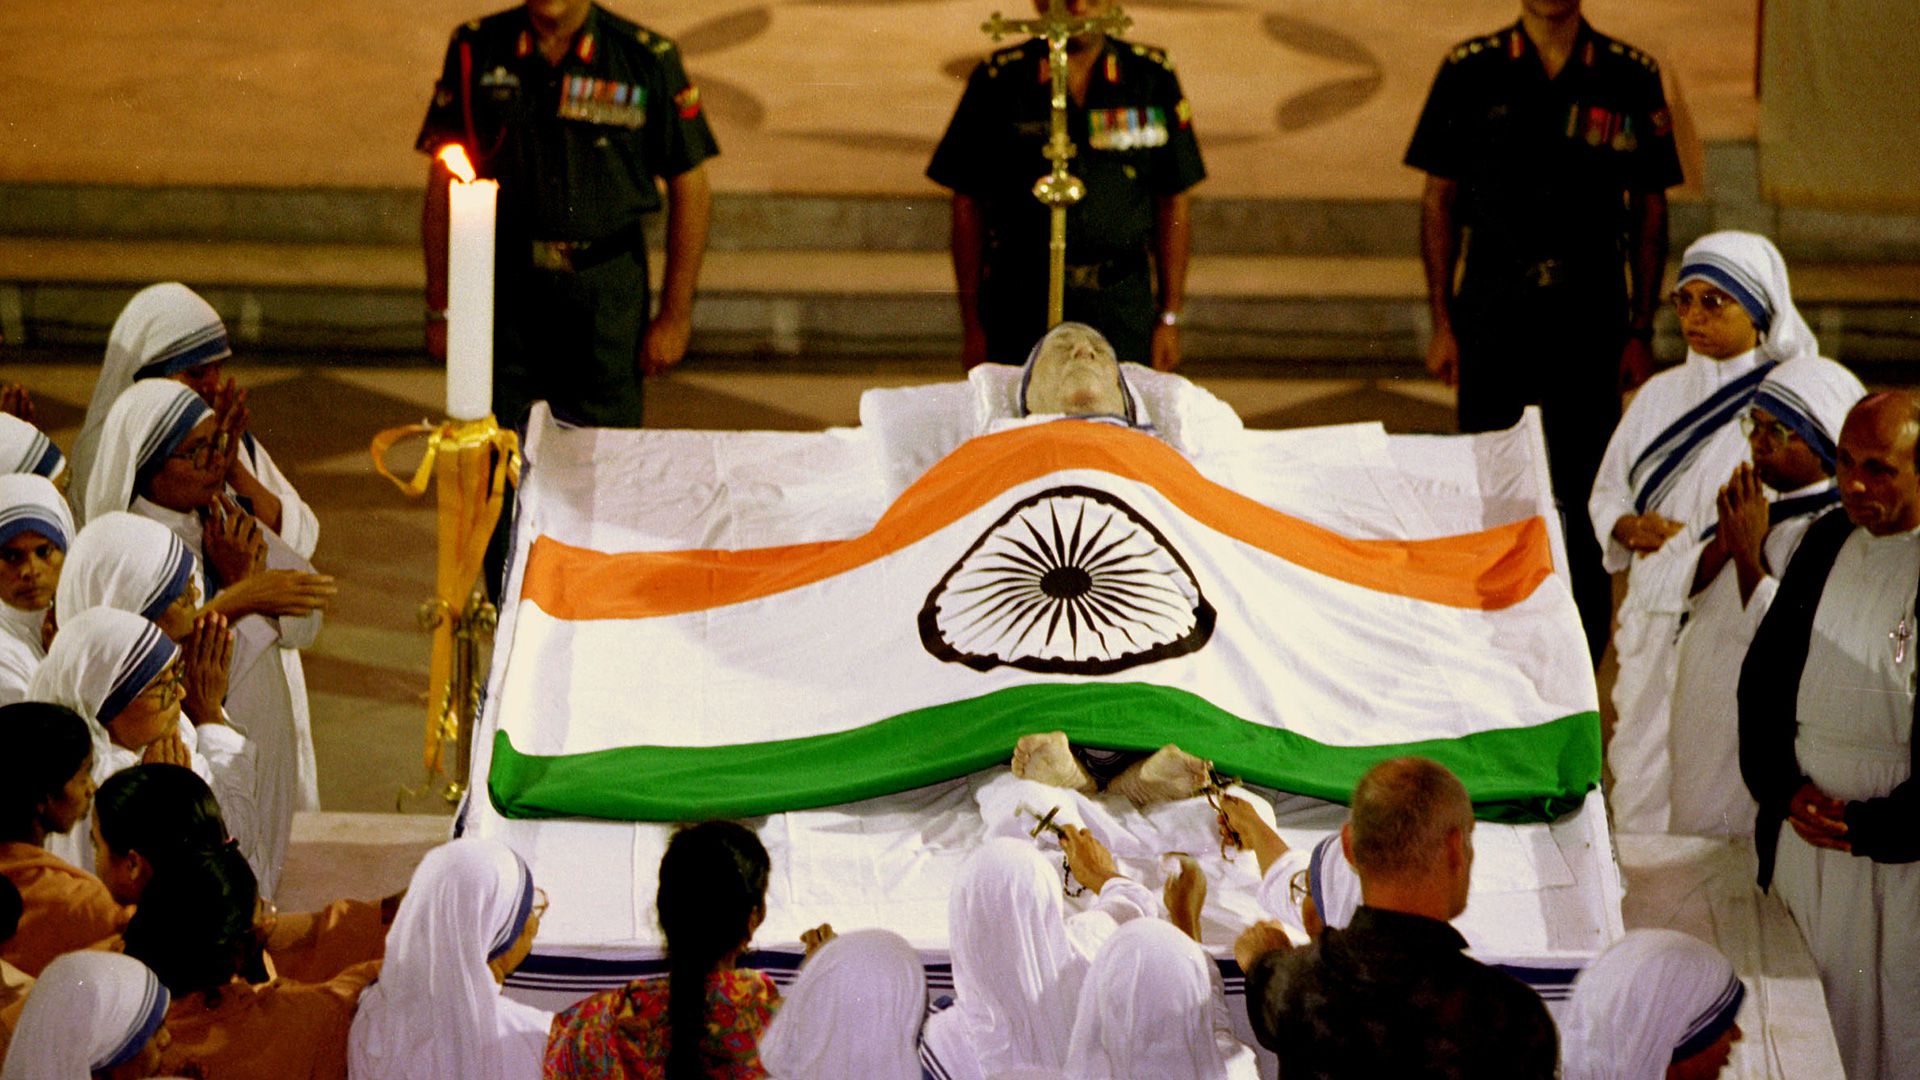 La madre Teresa de Calcuta recibió un funeral de estado por parte de India, sólo comparable a los que tuvieron lugar tras la muerte de Gandhi y Nehru (Patrick Robert/Sygma/CORBIS/Sygma via Getty Images)